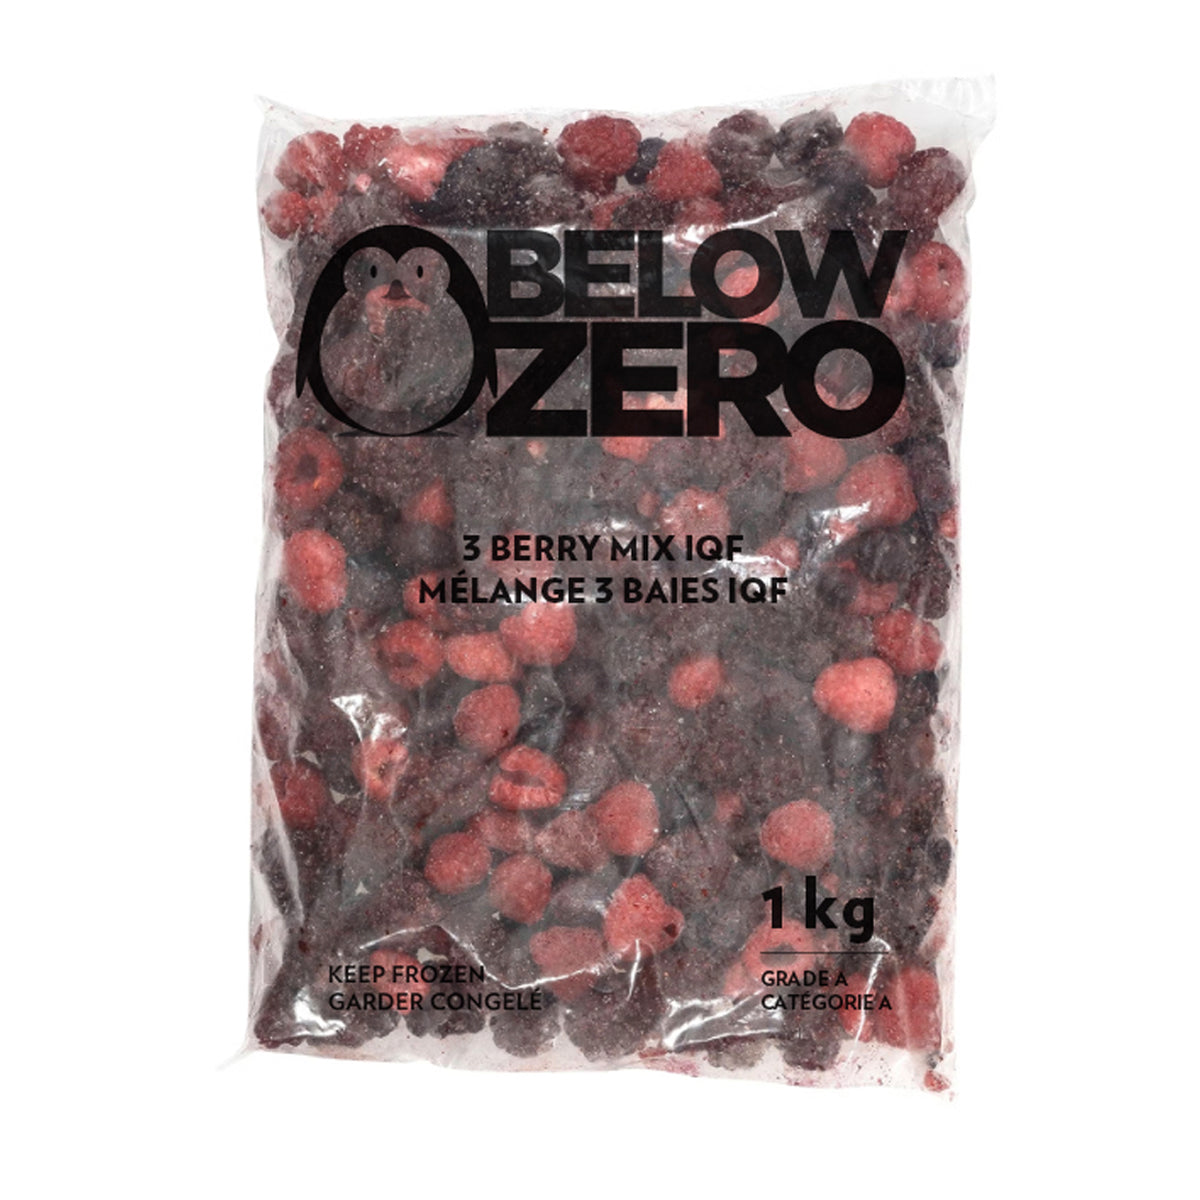 BELOW ZERO 3 berry mix